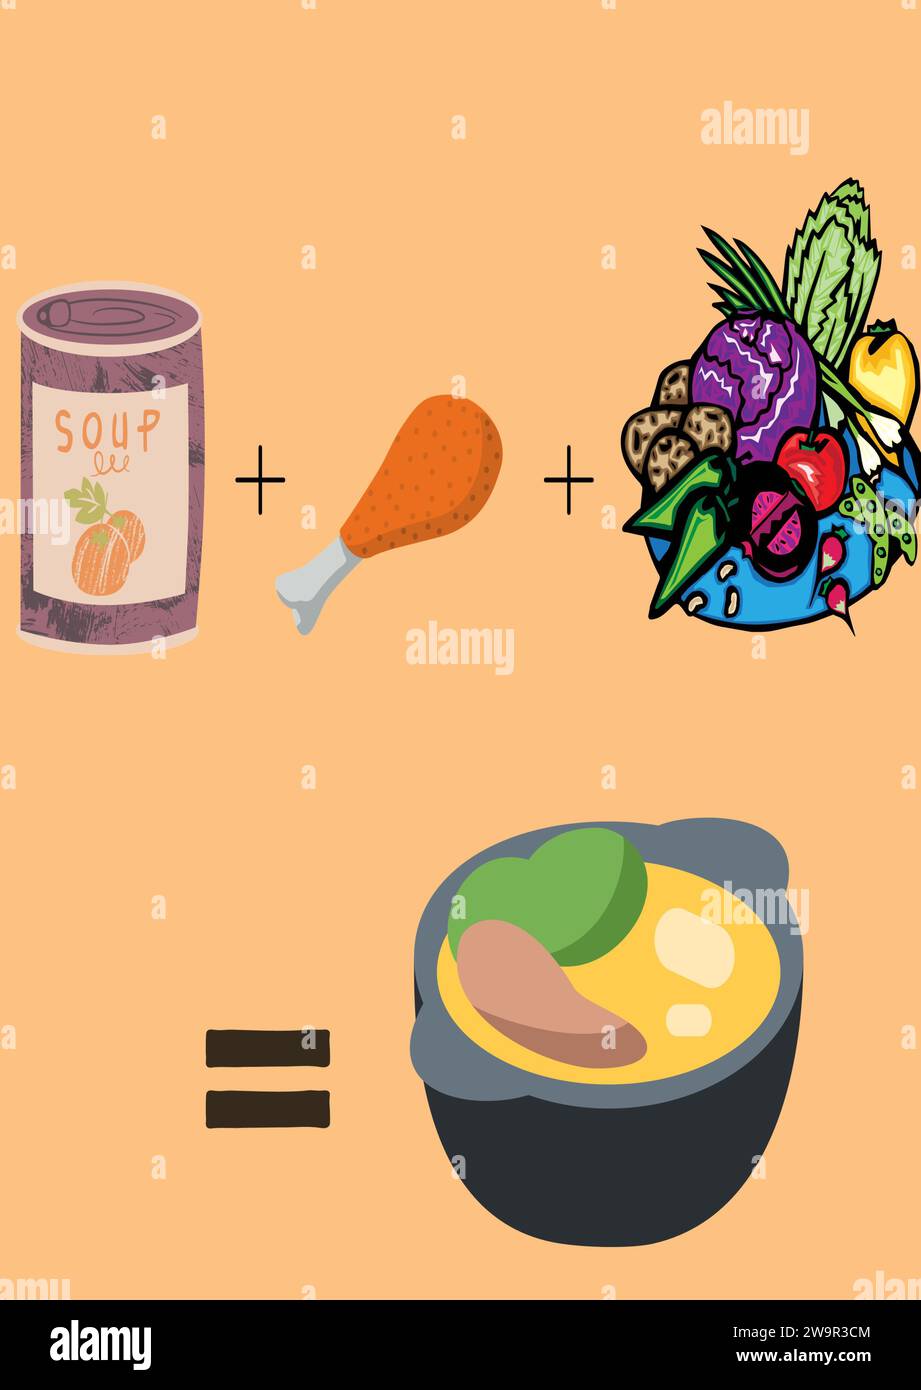 Eine einfache Zeichnung, die Essen in einer Schüssel zeigt. Eine Suppenschüssel mit Zutaten, Hühnchen und Gemüse. Gesundes Snack/Essen zeigt Wohlbefinden. Stock Vektor